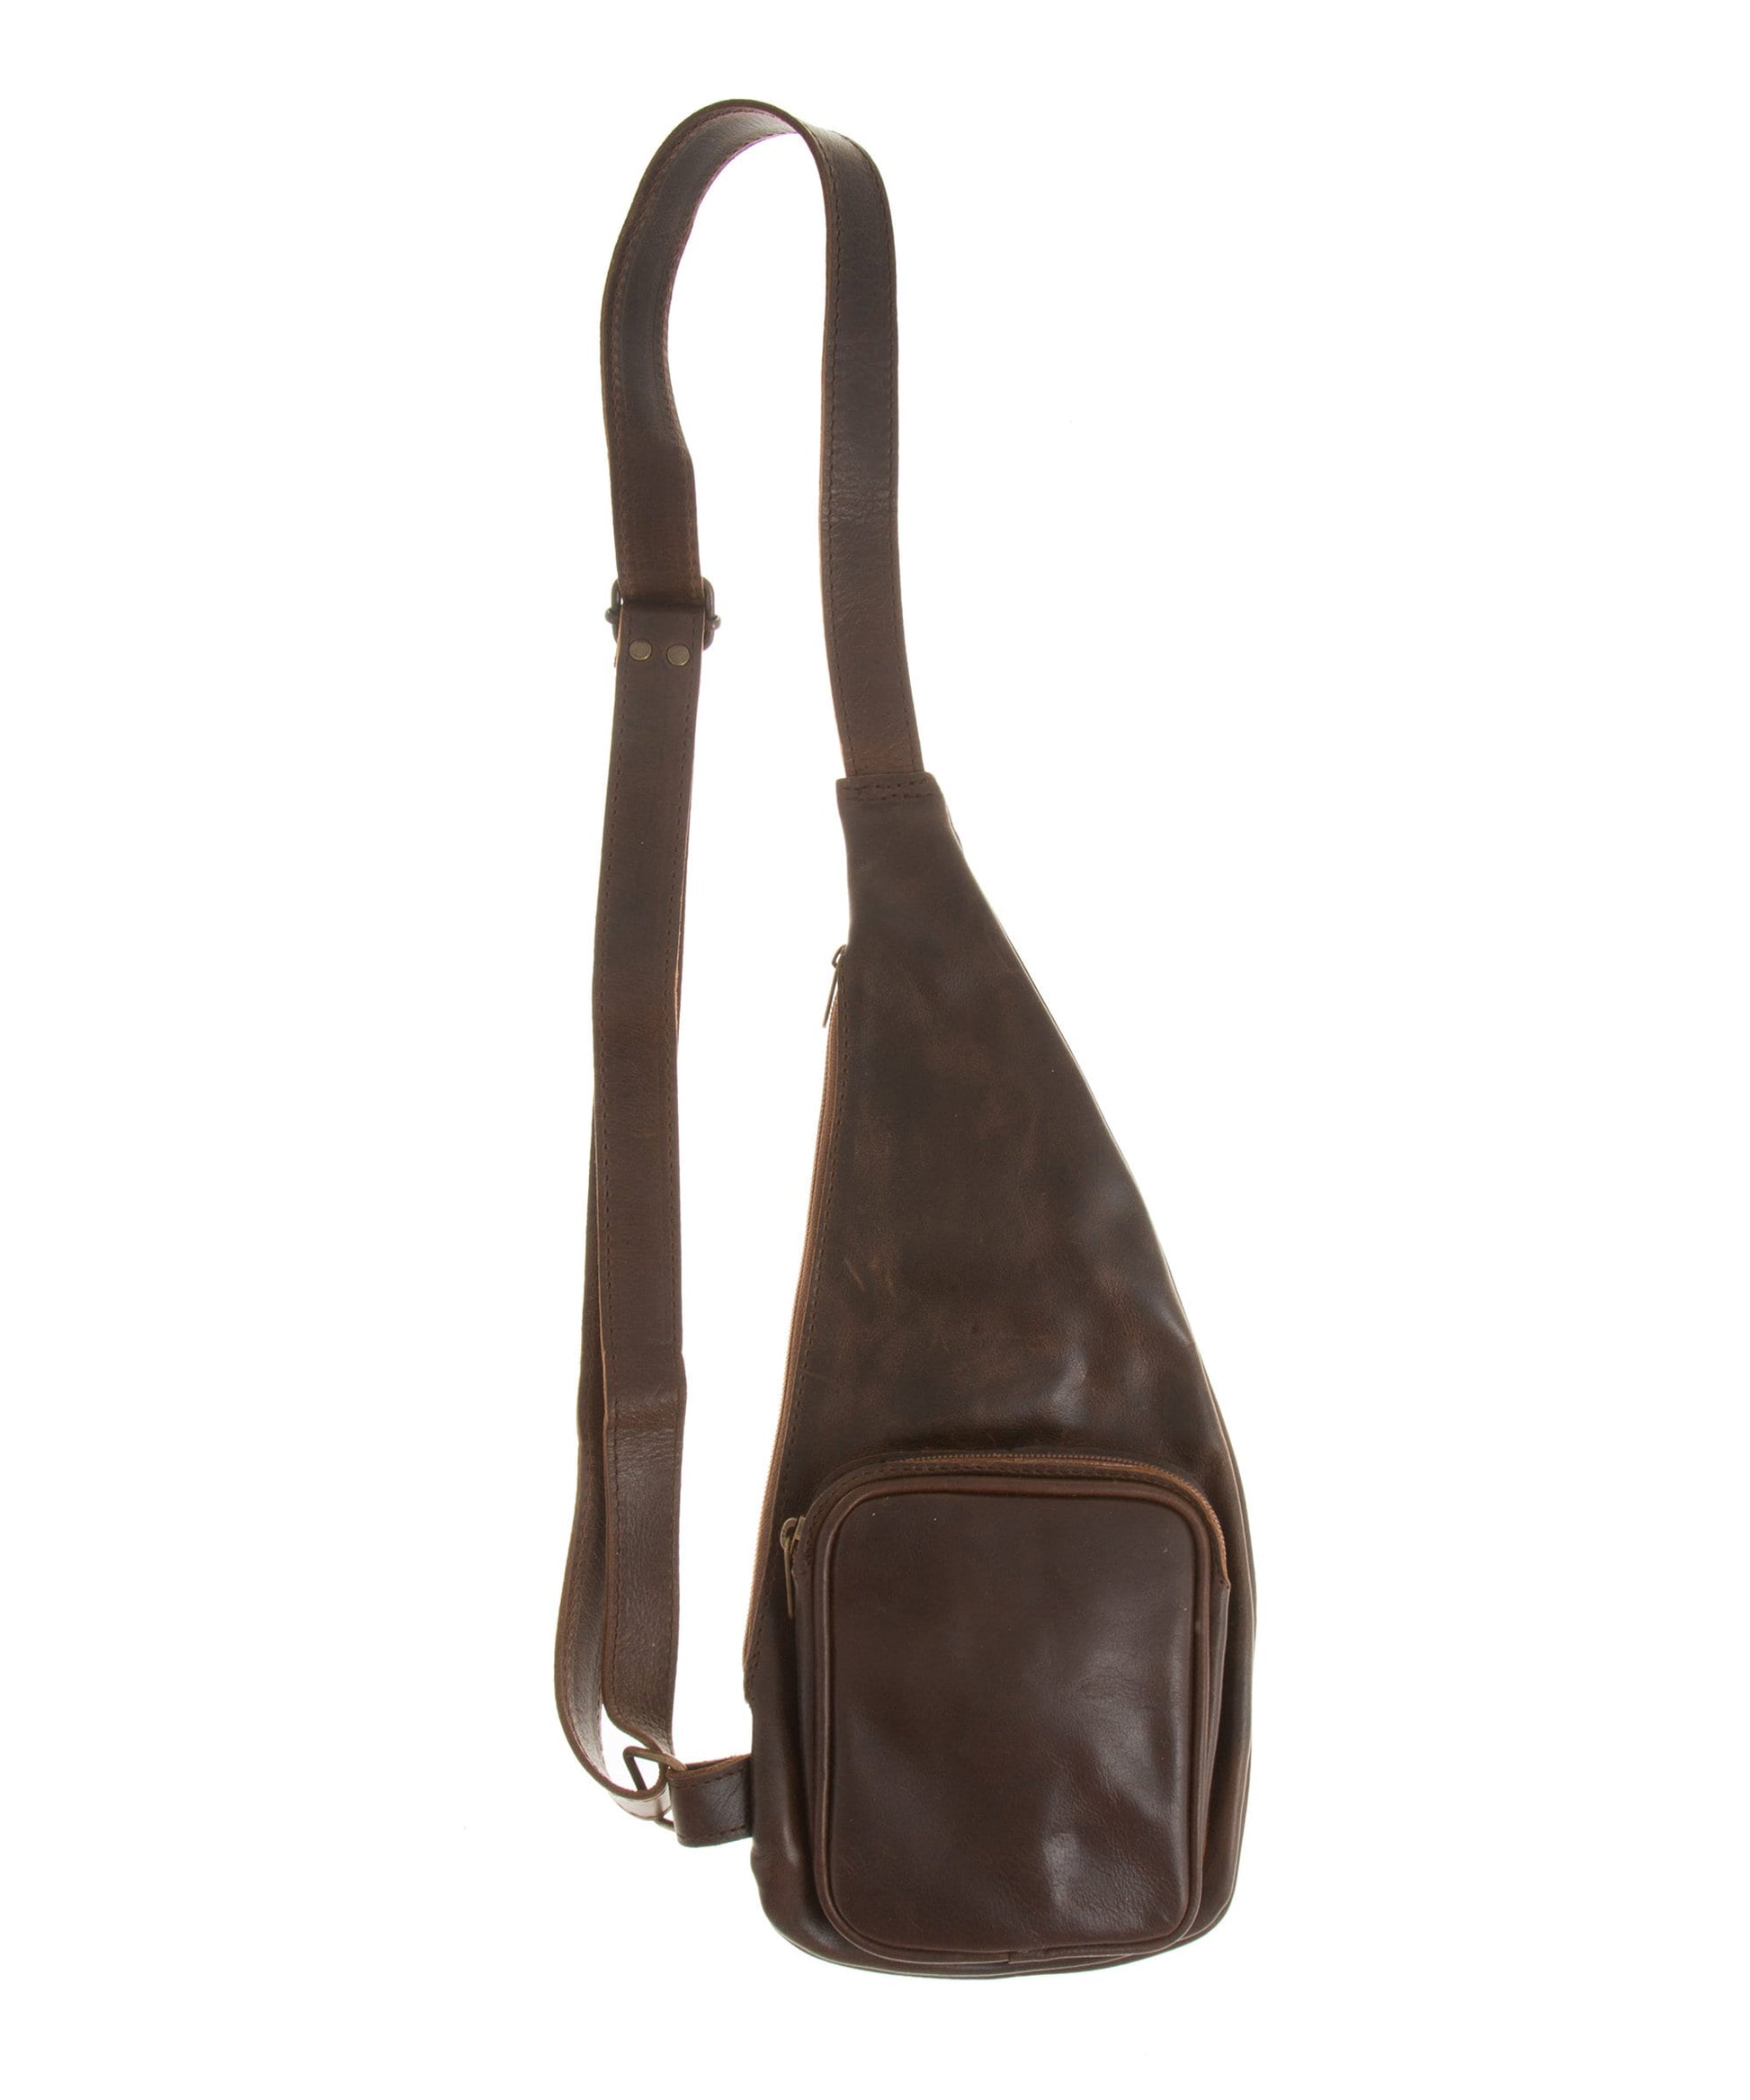 Leather chest bag men, Sling shoulder bag, Brown leather crossbody sling bag